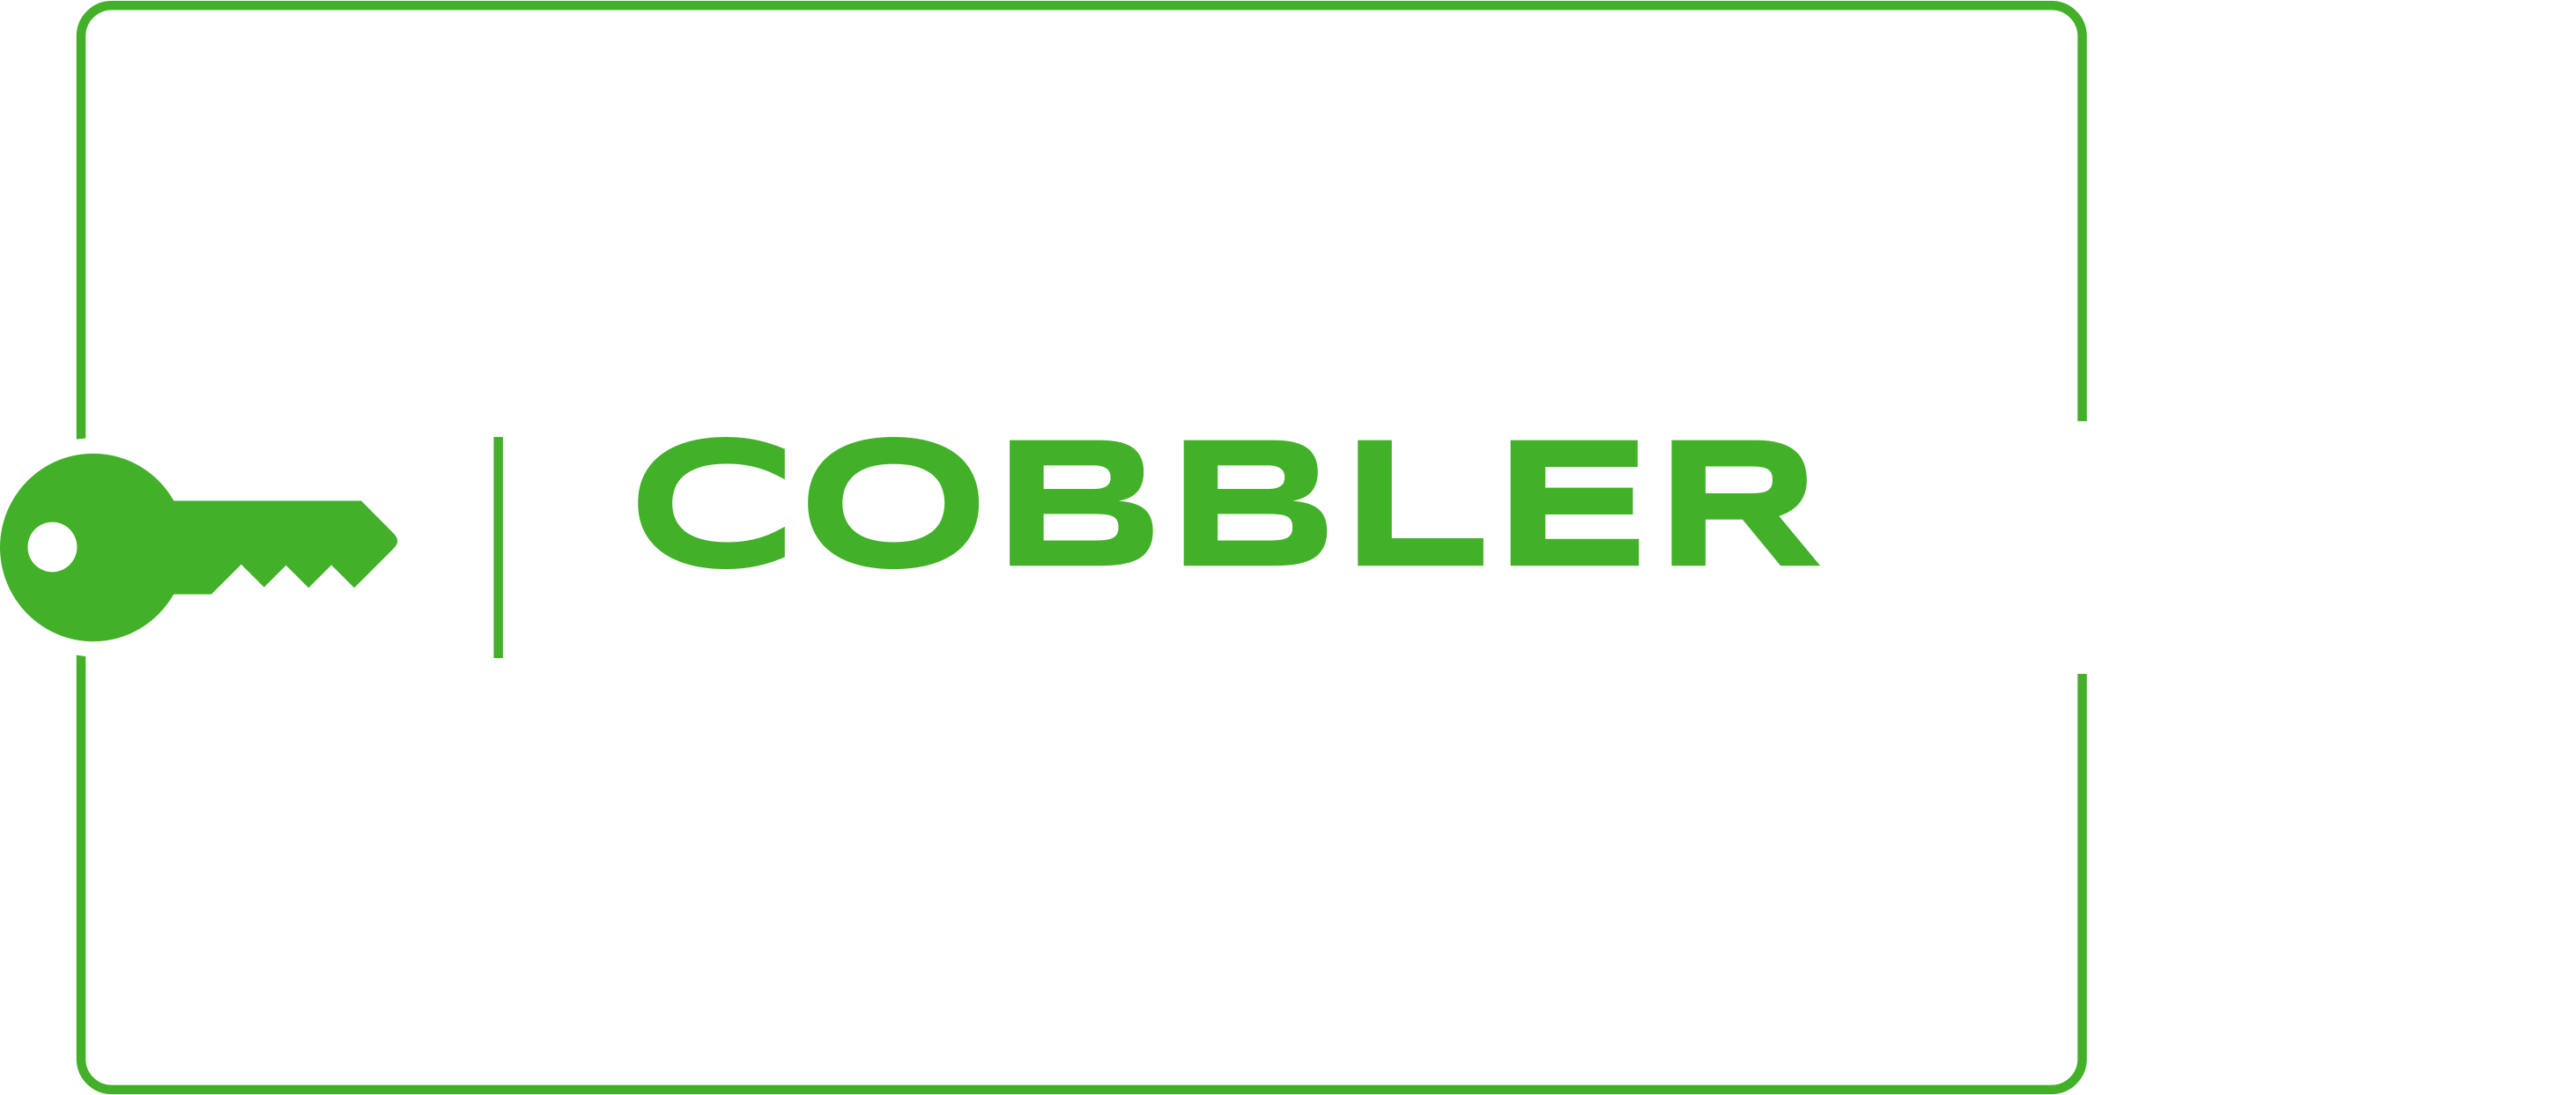 Cobbler Cope